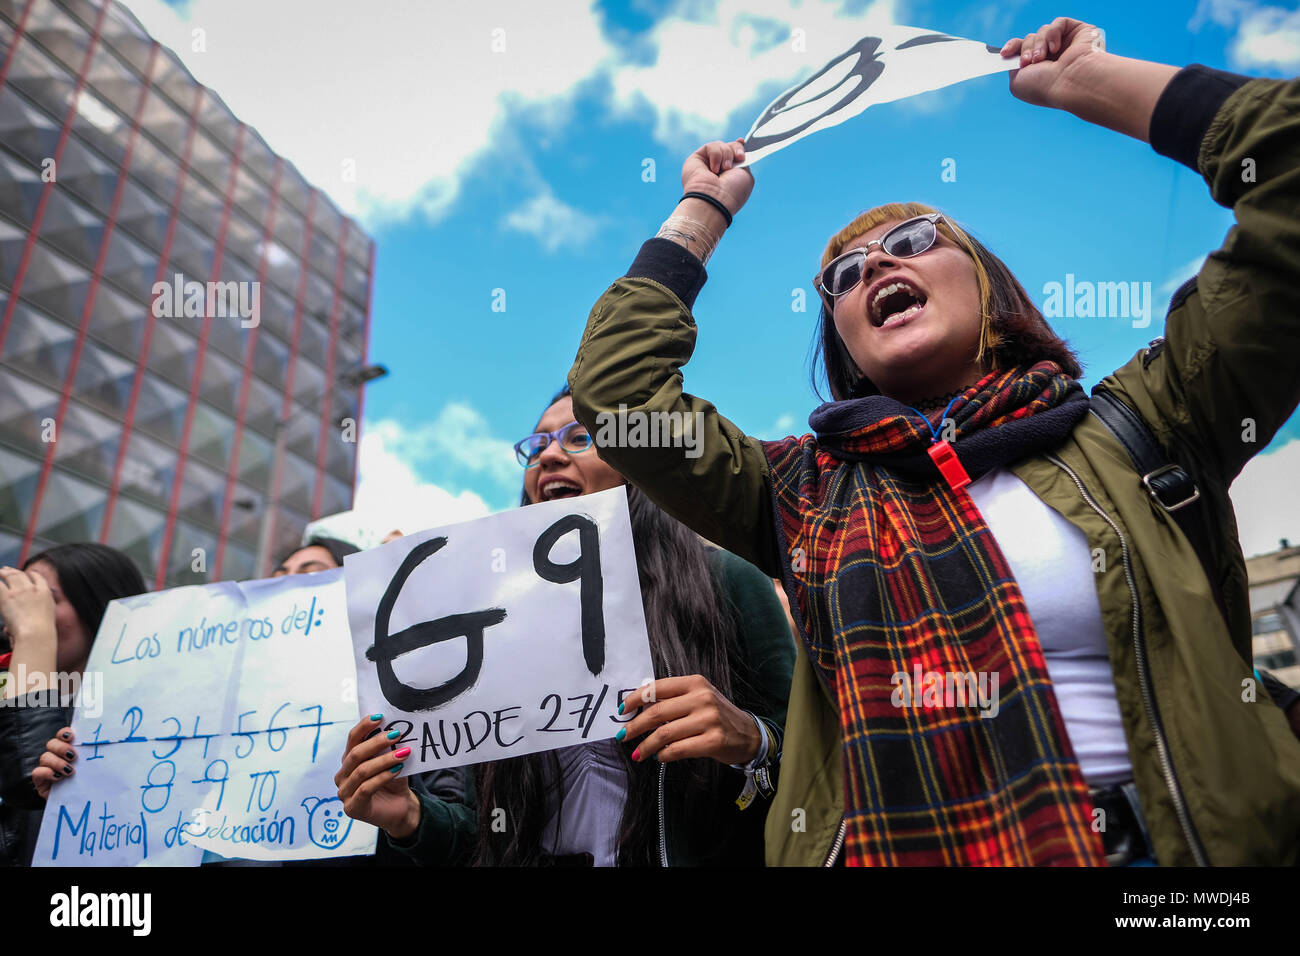 Bogota, Kolumbien. 31. Mai, 2018. Zwei Mädchen März Übersicht verändert zahlen als in der E-14 Formate der Stimmenauszählung der letzten Präsidentschaftswahlen in Kolumbien. Nach den Präsidentschaftswahlen in Kolumbien am 27. Mai einige Änderungen in den Formaten der Stimmenauszählung gefunden worden. Die Gesamtzahl der Stimmen geändert wurden mehr Stimmen zu, bestimmte Kandidaten zu geben. Am 31. Mai, eine im März wurde organisiert, um zu fordern, dass das nationale Register der Kolumbien Handeln in dieser Hinsicht. Credit: SOPA Images Limited/Alamy leben Nachrichten Stockfoto